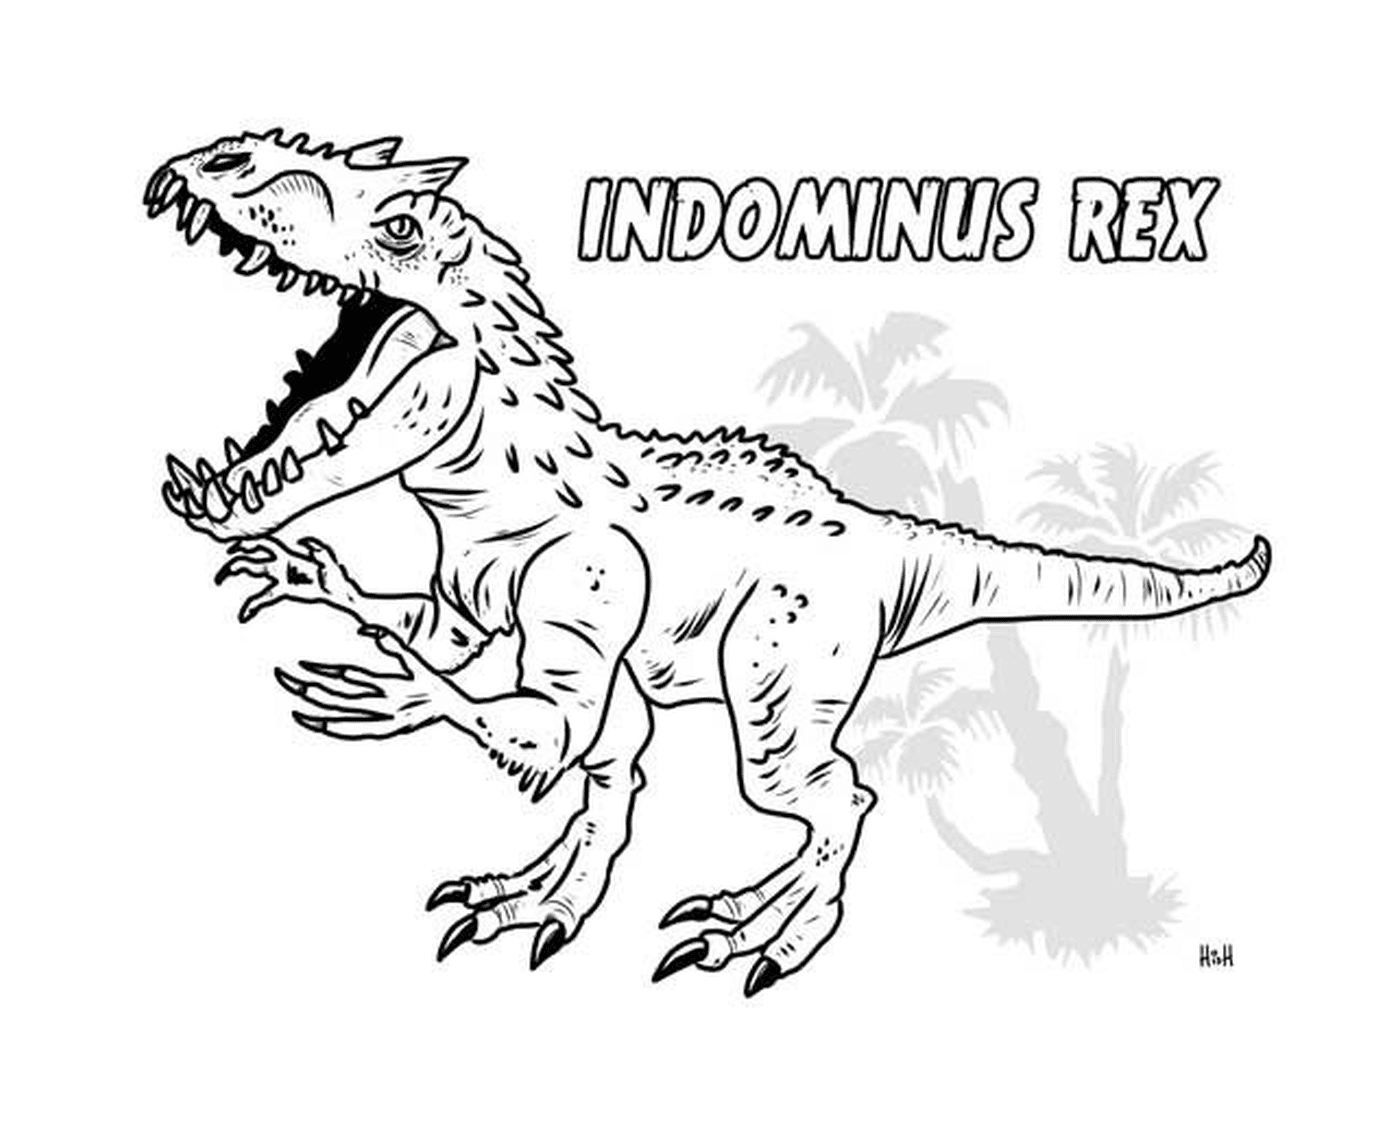  Indominus Rex, pericoloso mondo giurassico 